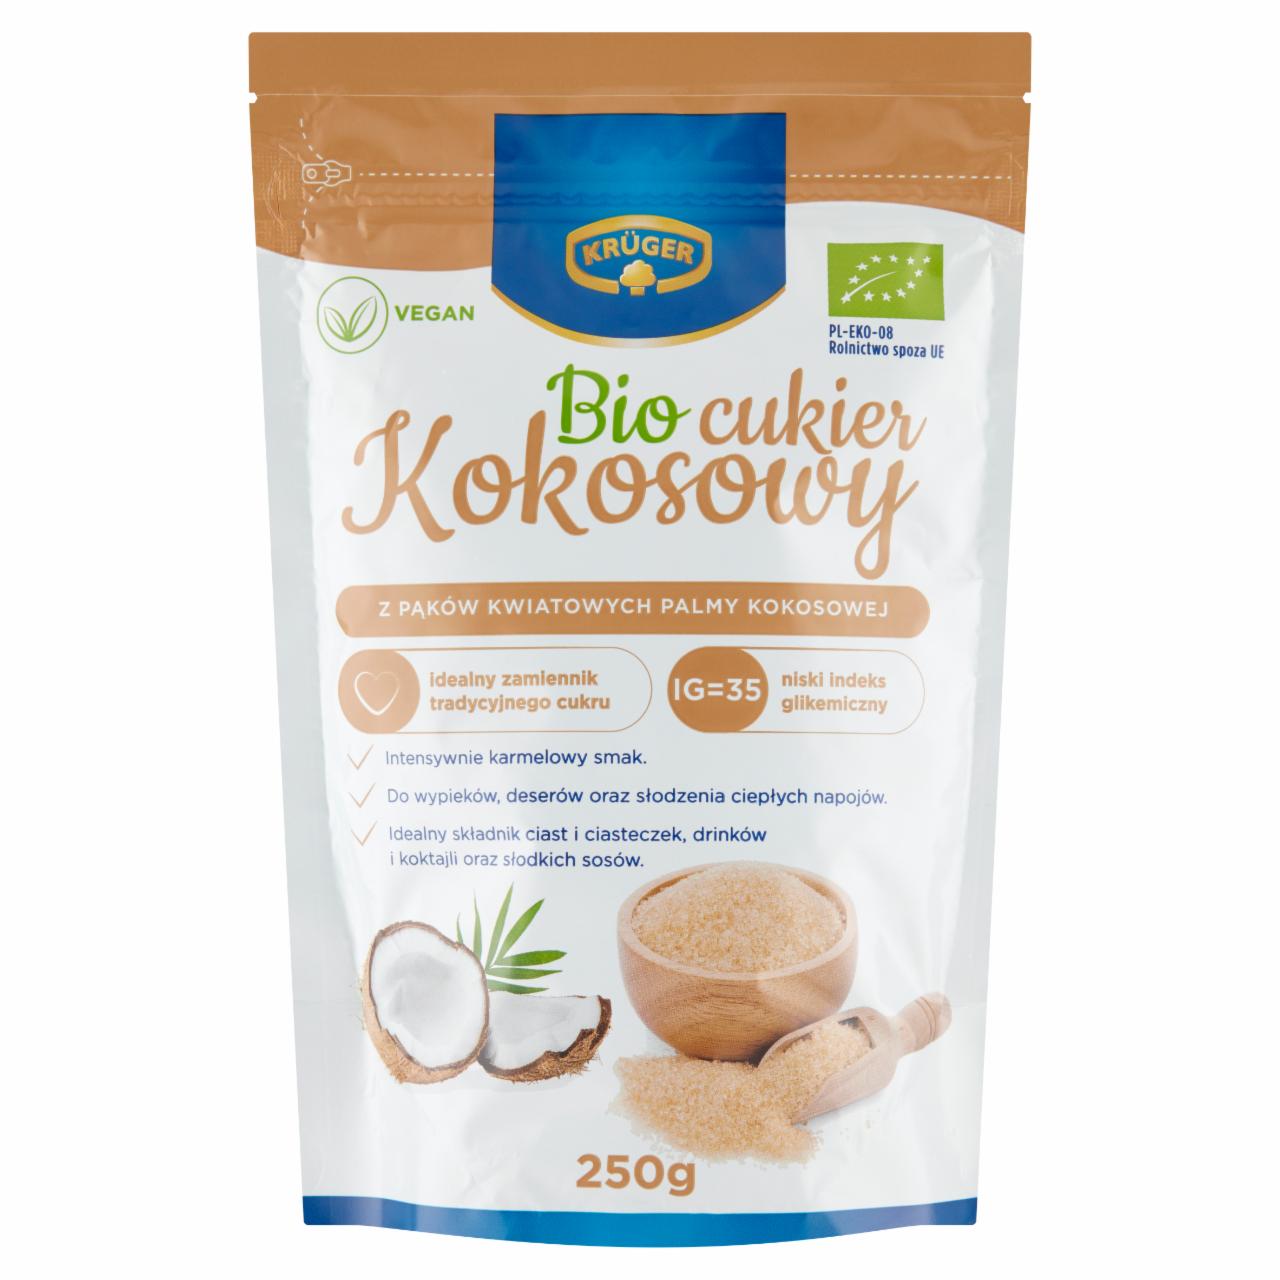 Zdjęcia - Krüger Bio cukier kokosowy 250 g